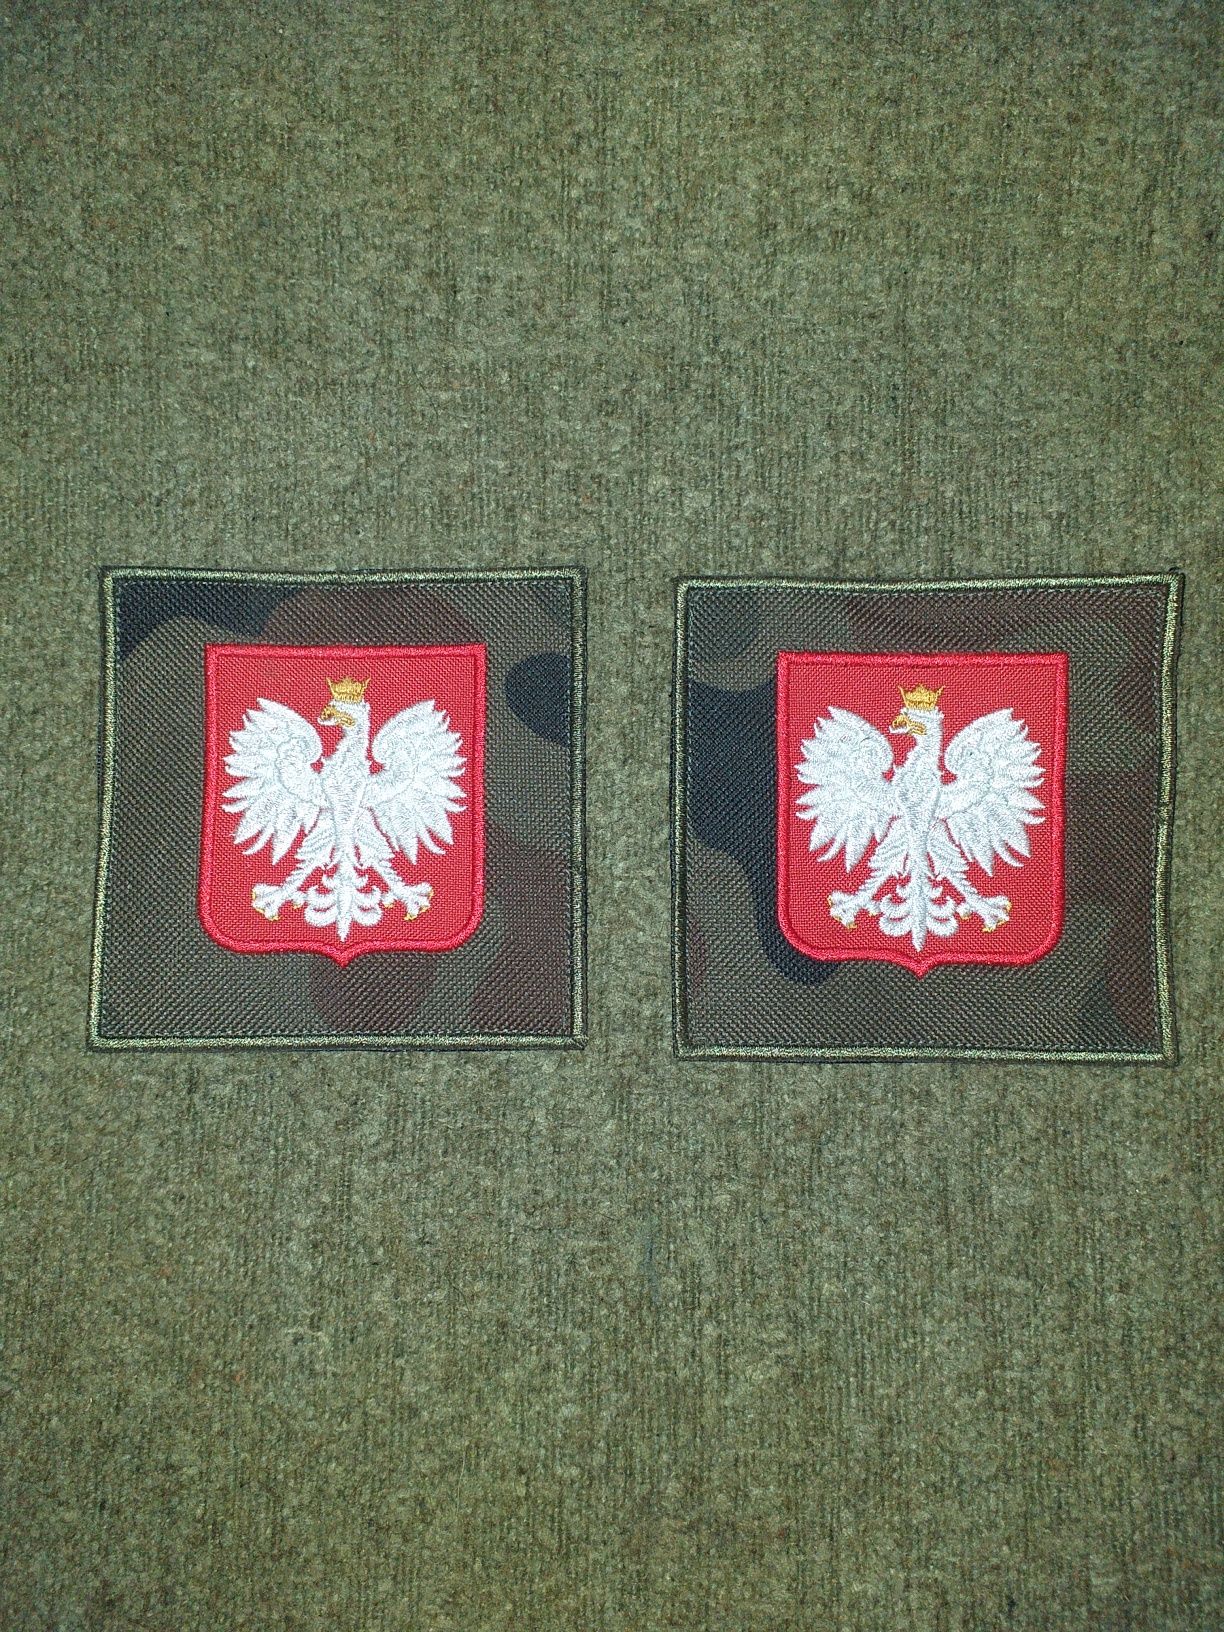 Godło Polskie na mundur wojskowy polowy,militaria,demobil,wz.93,WP